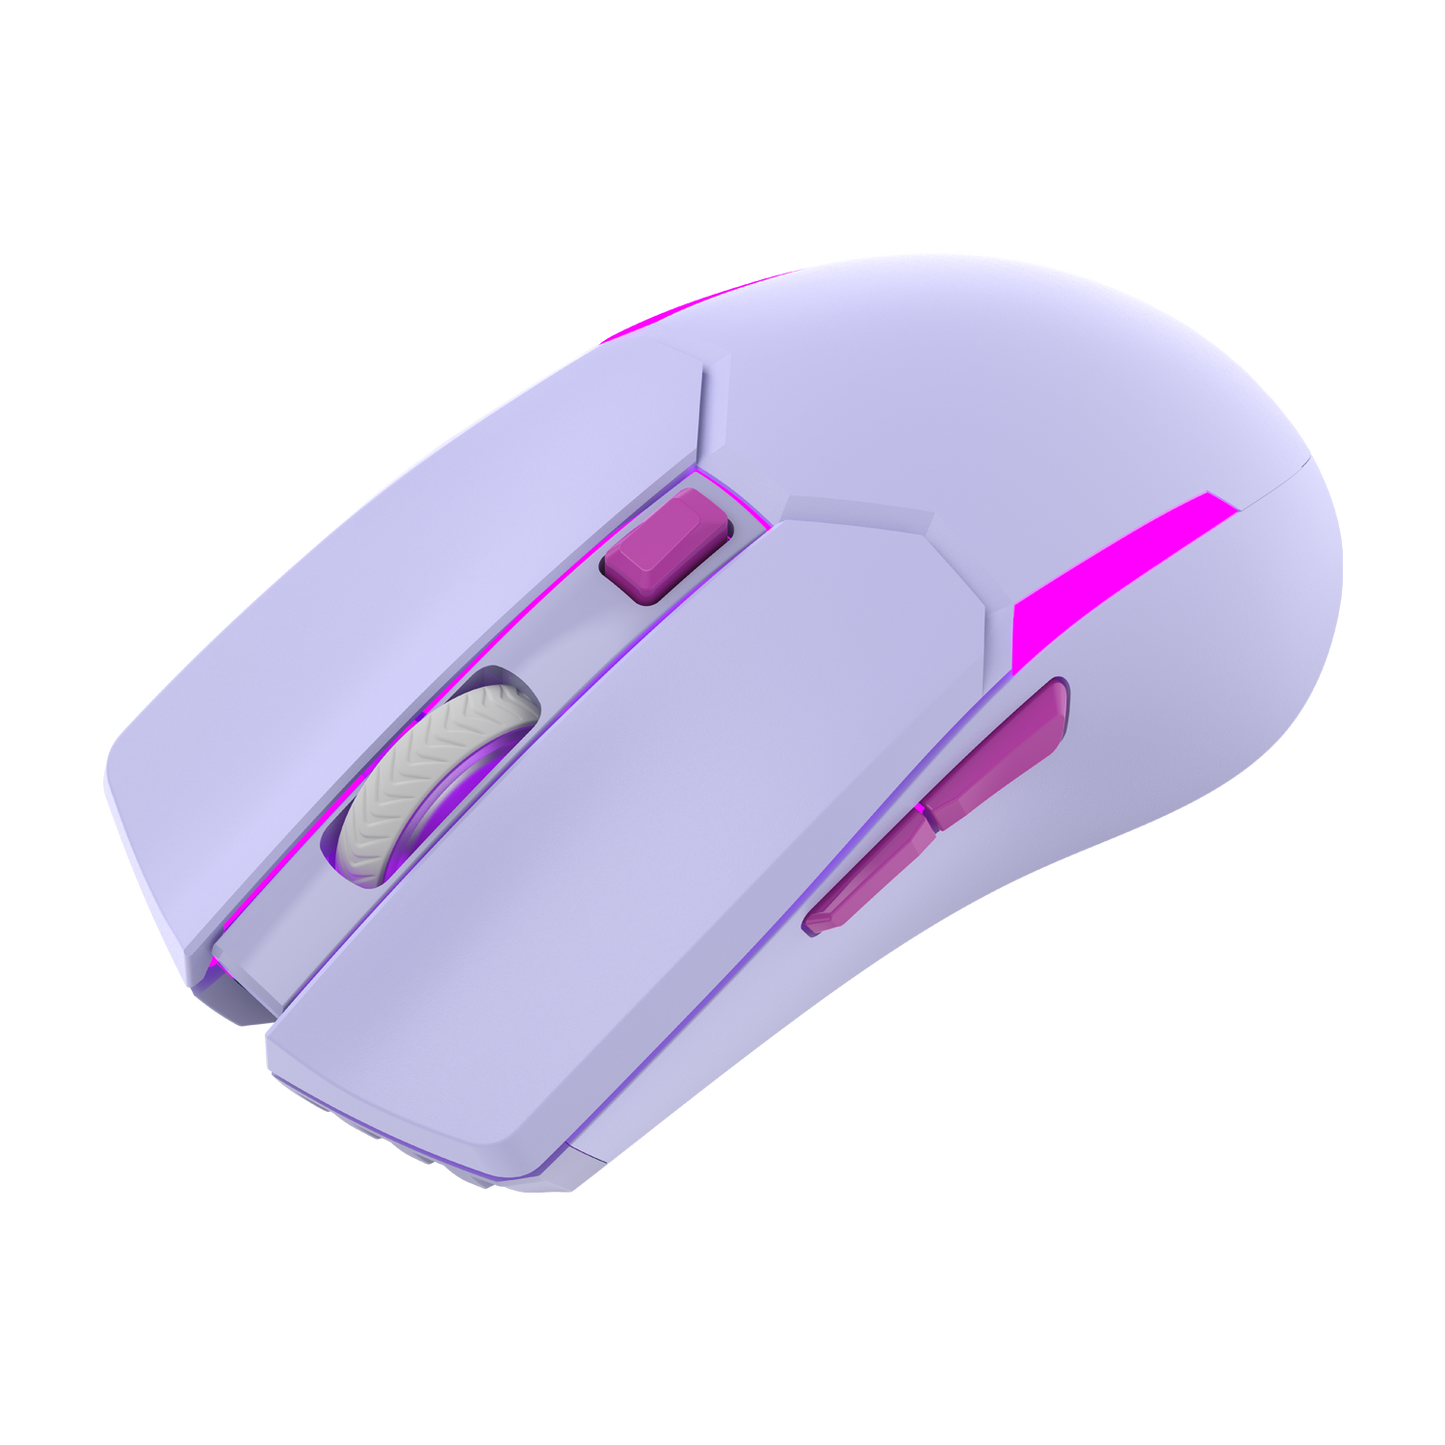 Fantech Wireless Gaming Mouse - Purple (VENOM II WGC2)